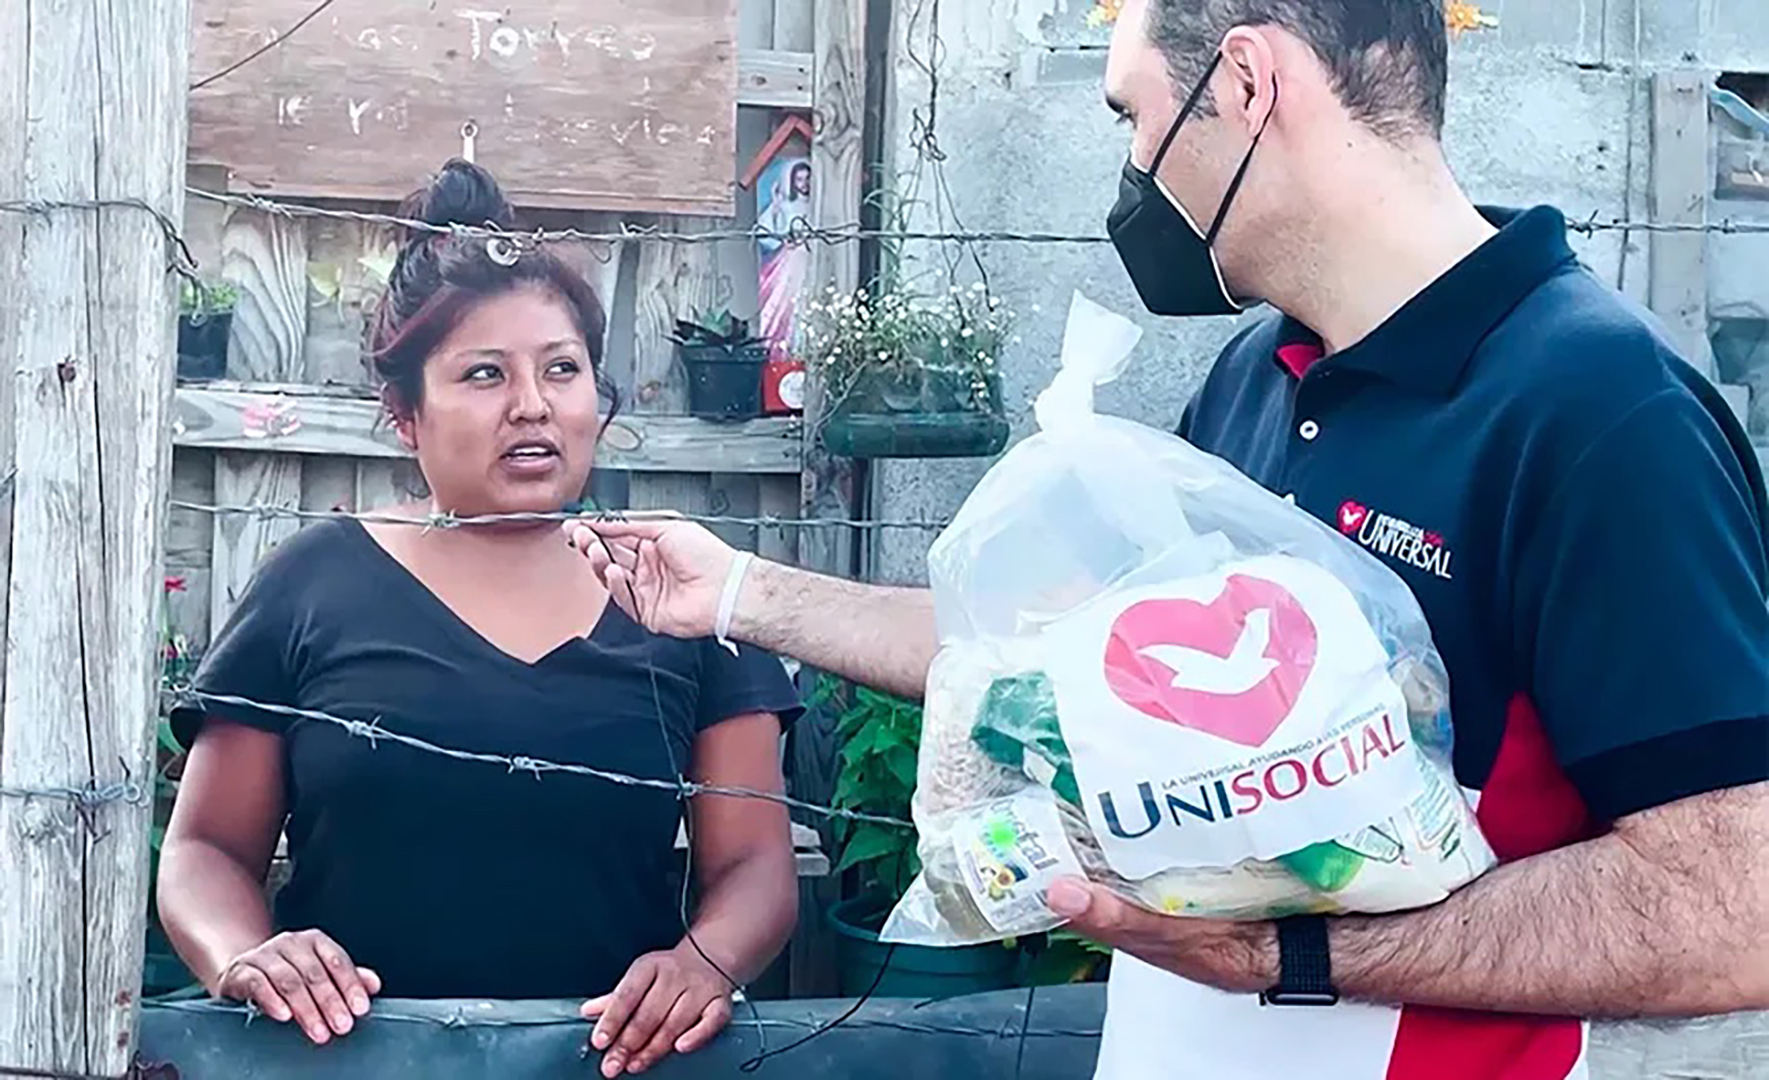 UniSocial llega a Nuevo León, México para ayudar a los más necesitados